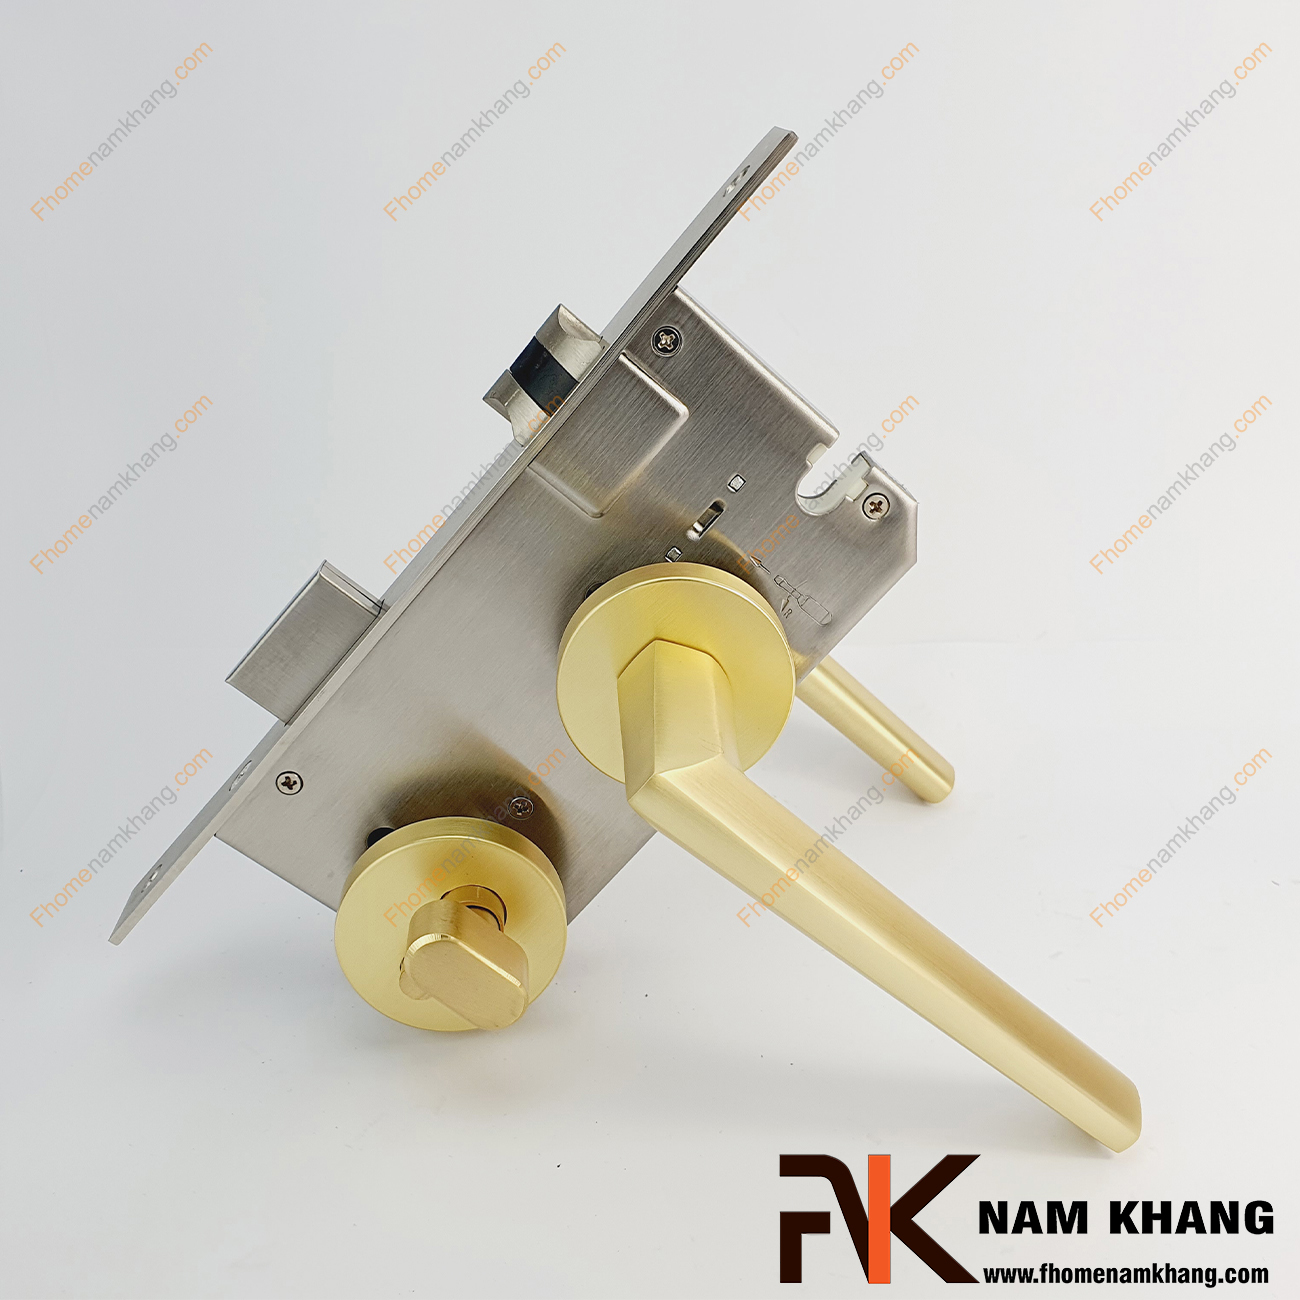 Khóa cửa phân thể hiện đại màu vàng xước NK573-VX được sản xuất từ hợp kim cao cấp, là dạng khóa chuyên dùng cho các dạng cửa phòng, cửa ban công, cửa nhà vệ sinh,...